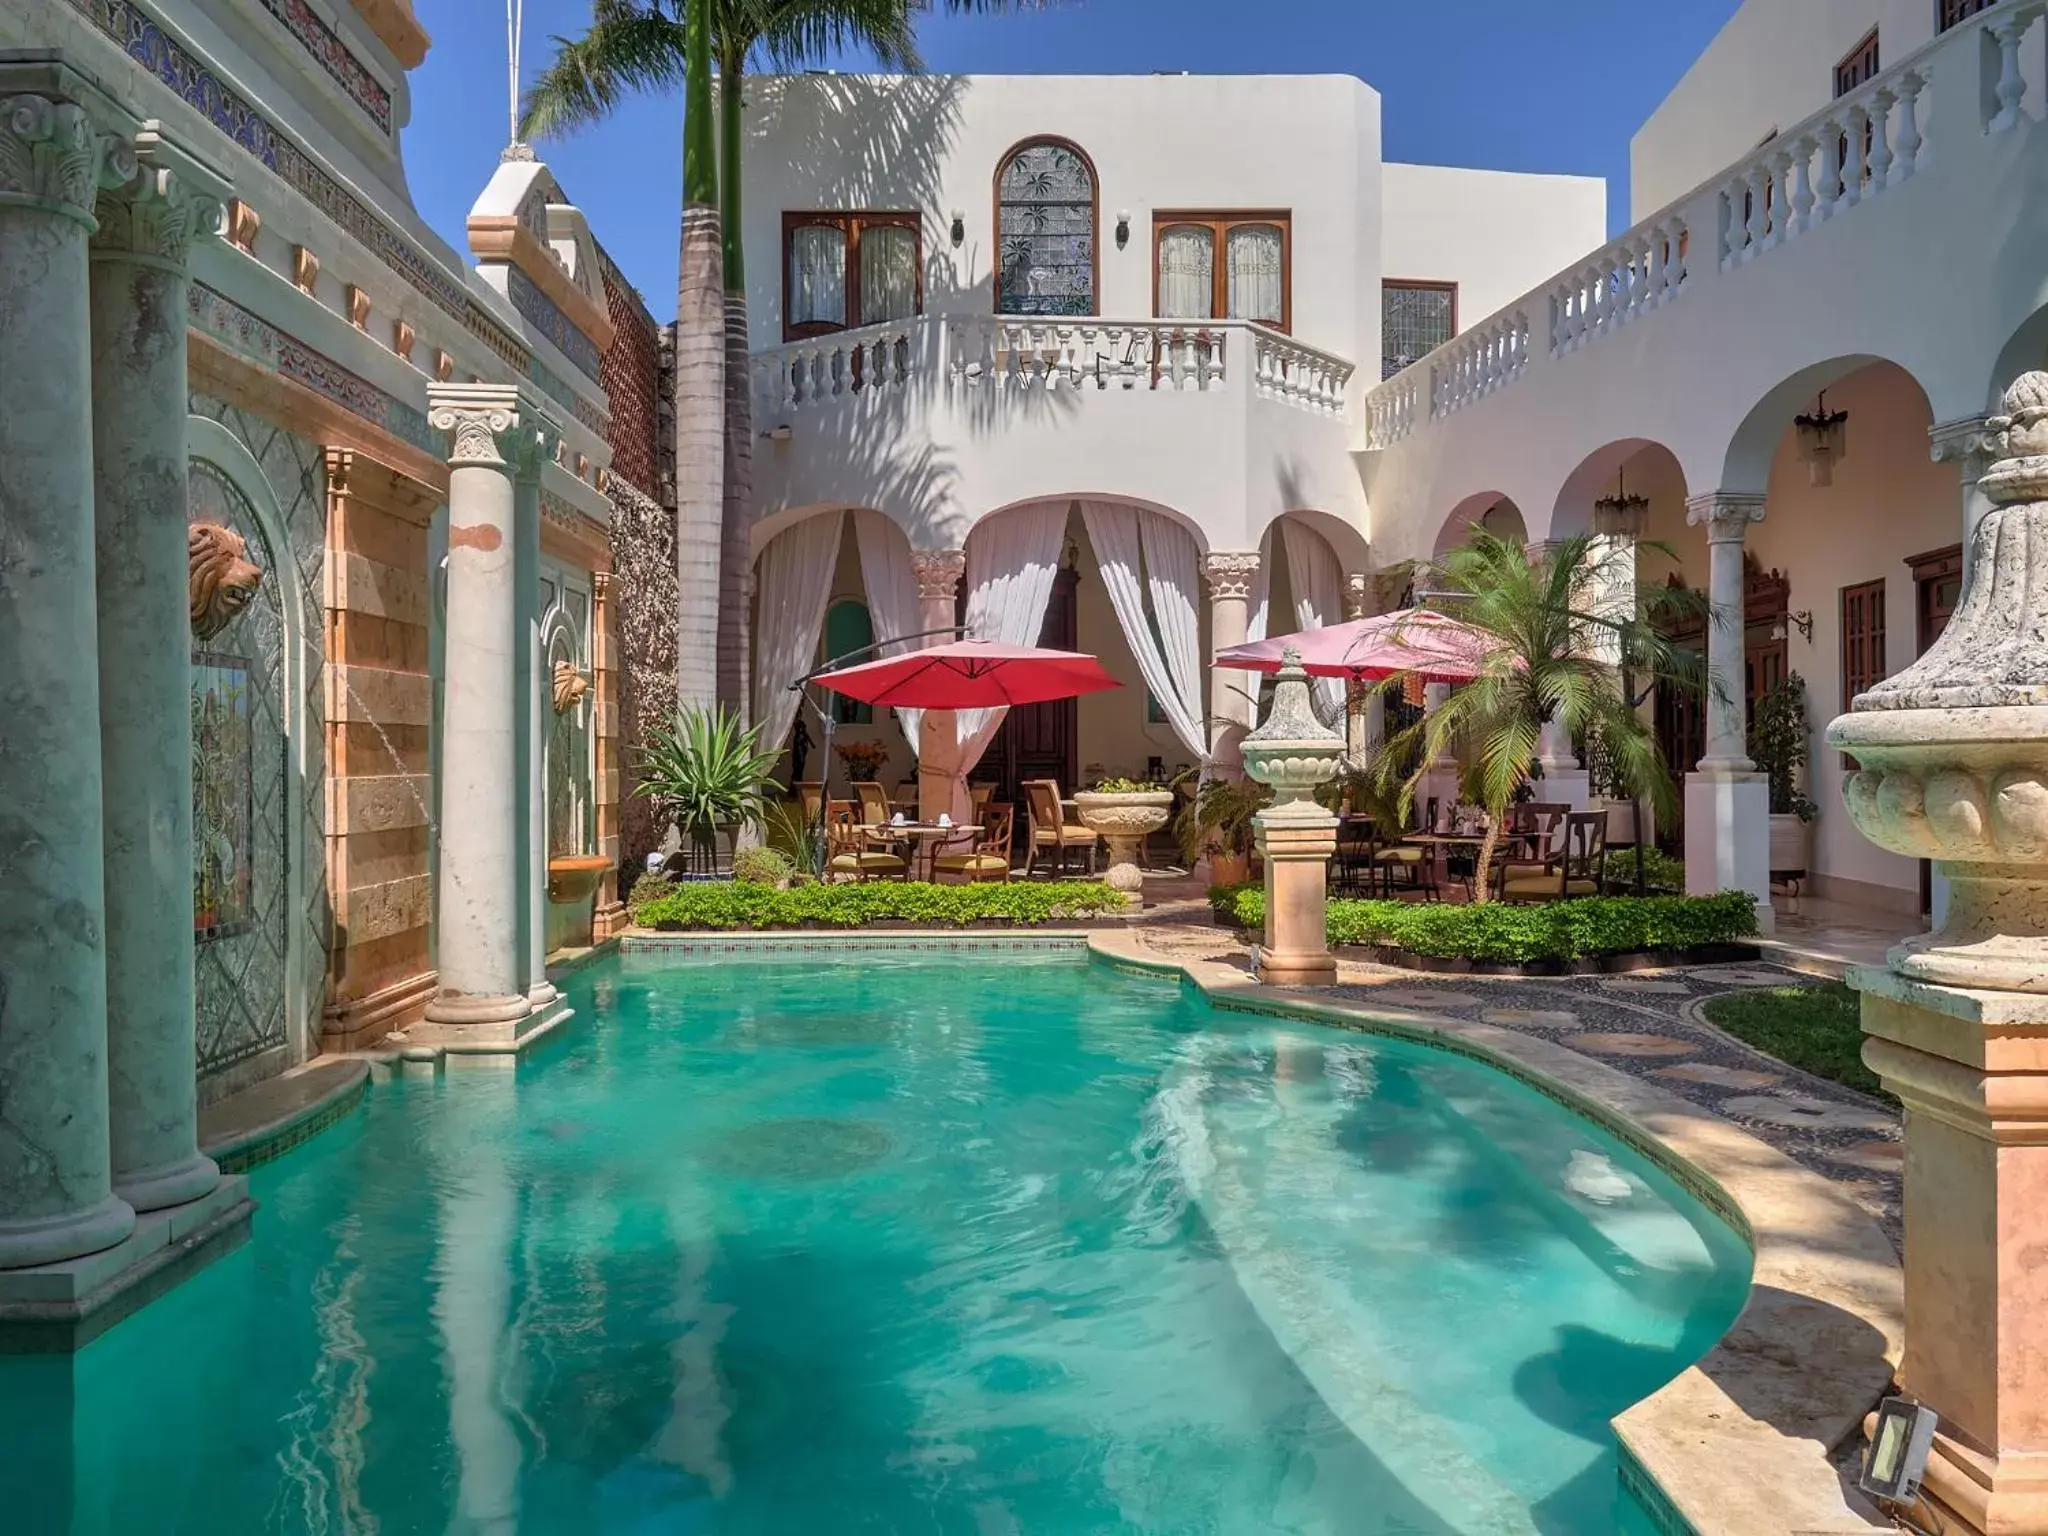 Swimming Pool in El Palacito Secreto Luxury Boutique Hotel & Spa